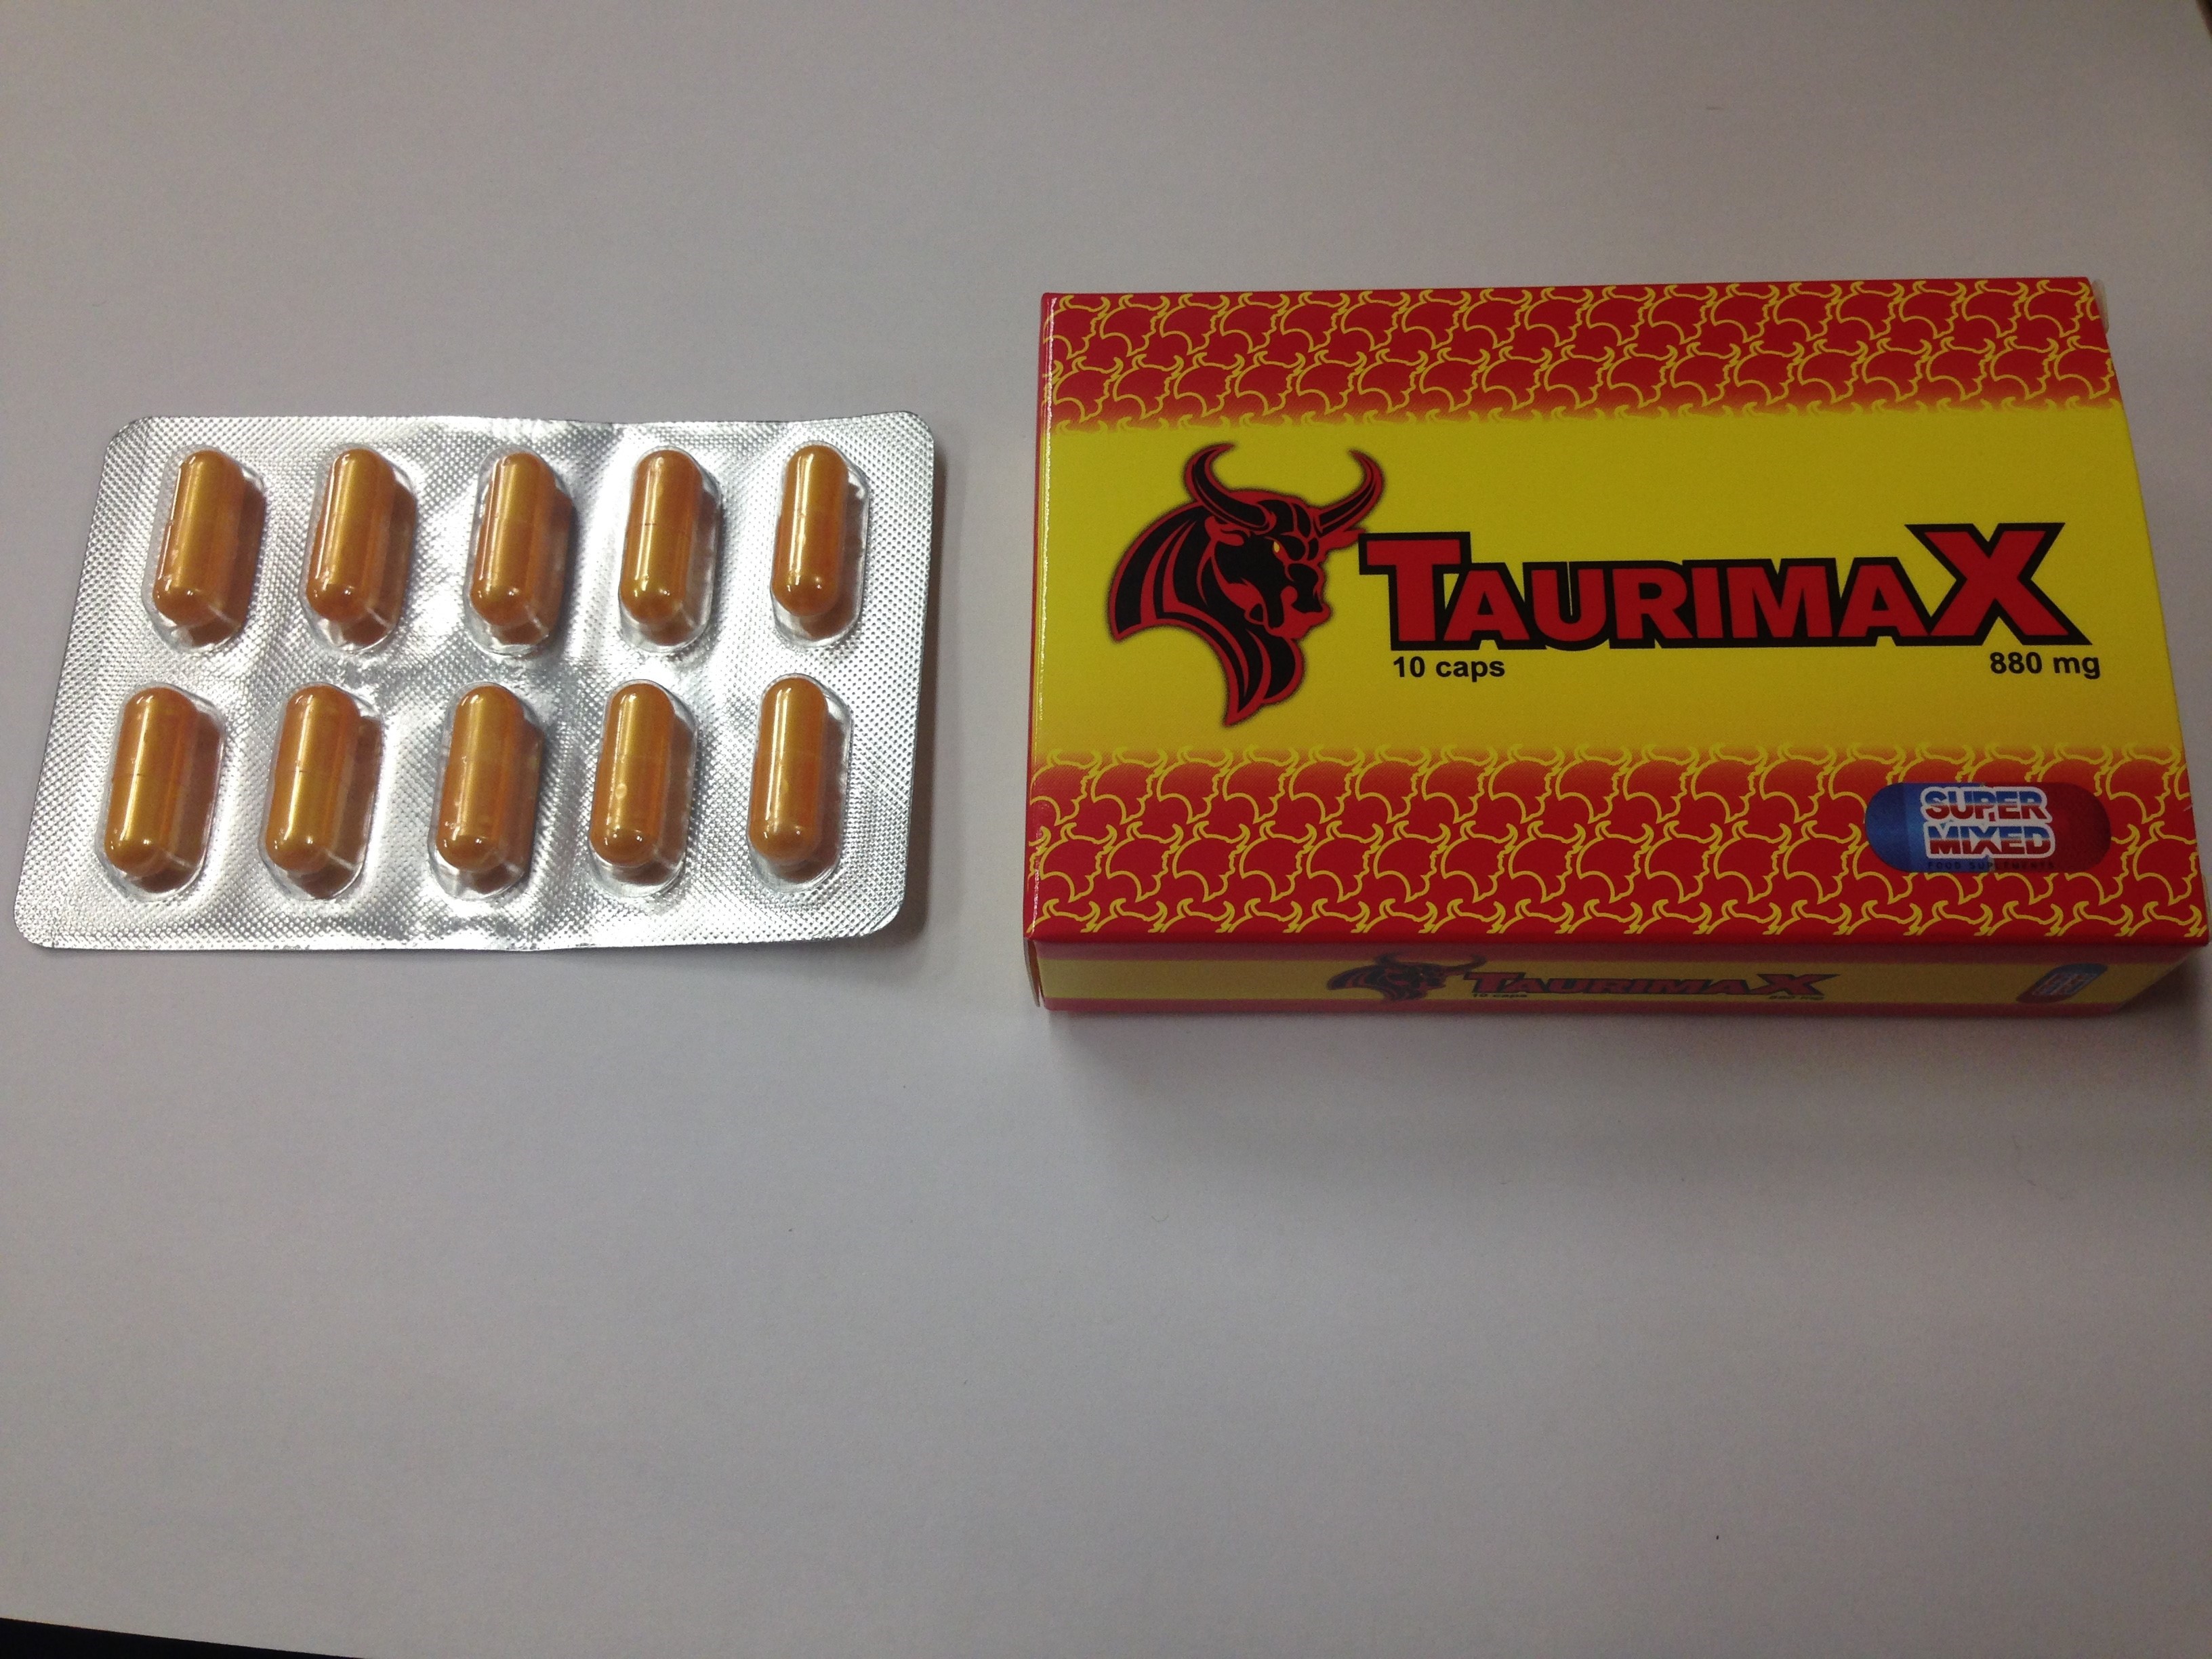 Billede af det ulovlige produkt: Taurimax